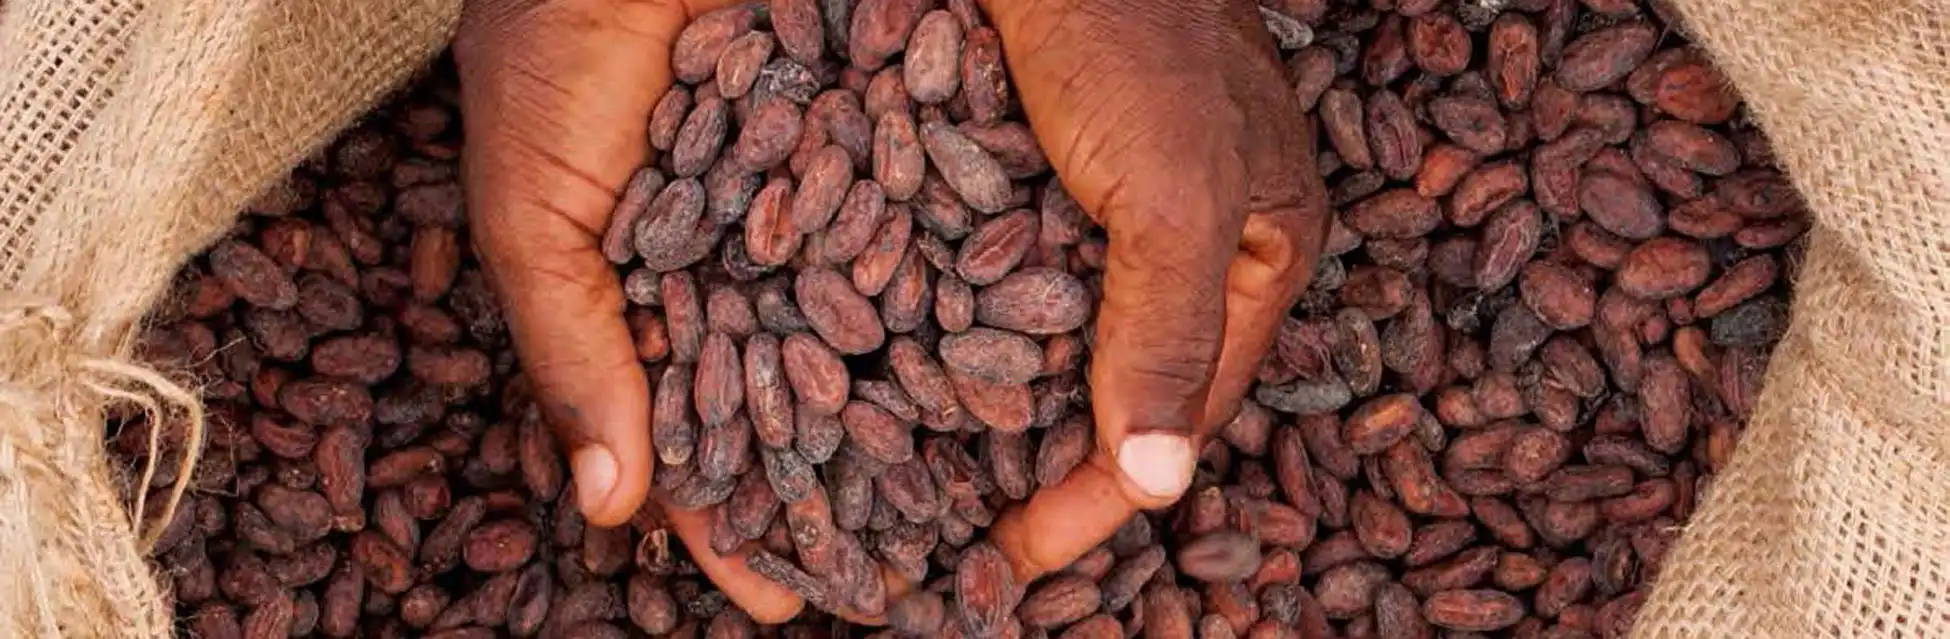 Unsere Leidenschaft ist Kakao - Foto: Kakaobohnen in Händen